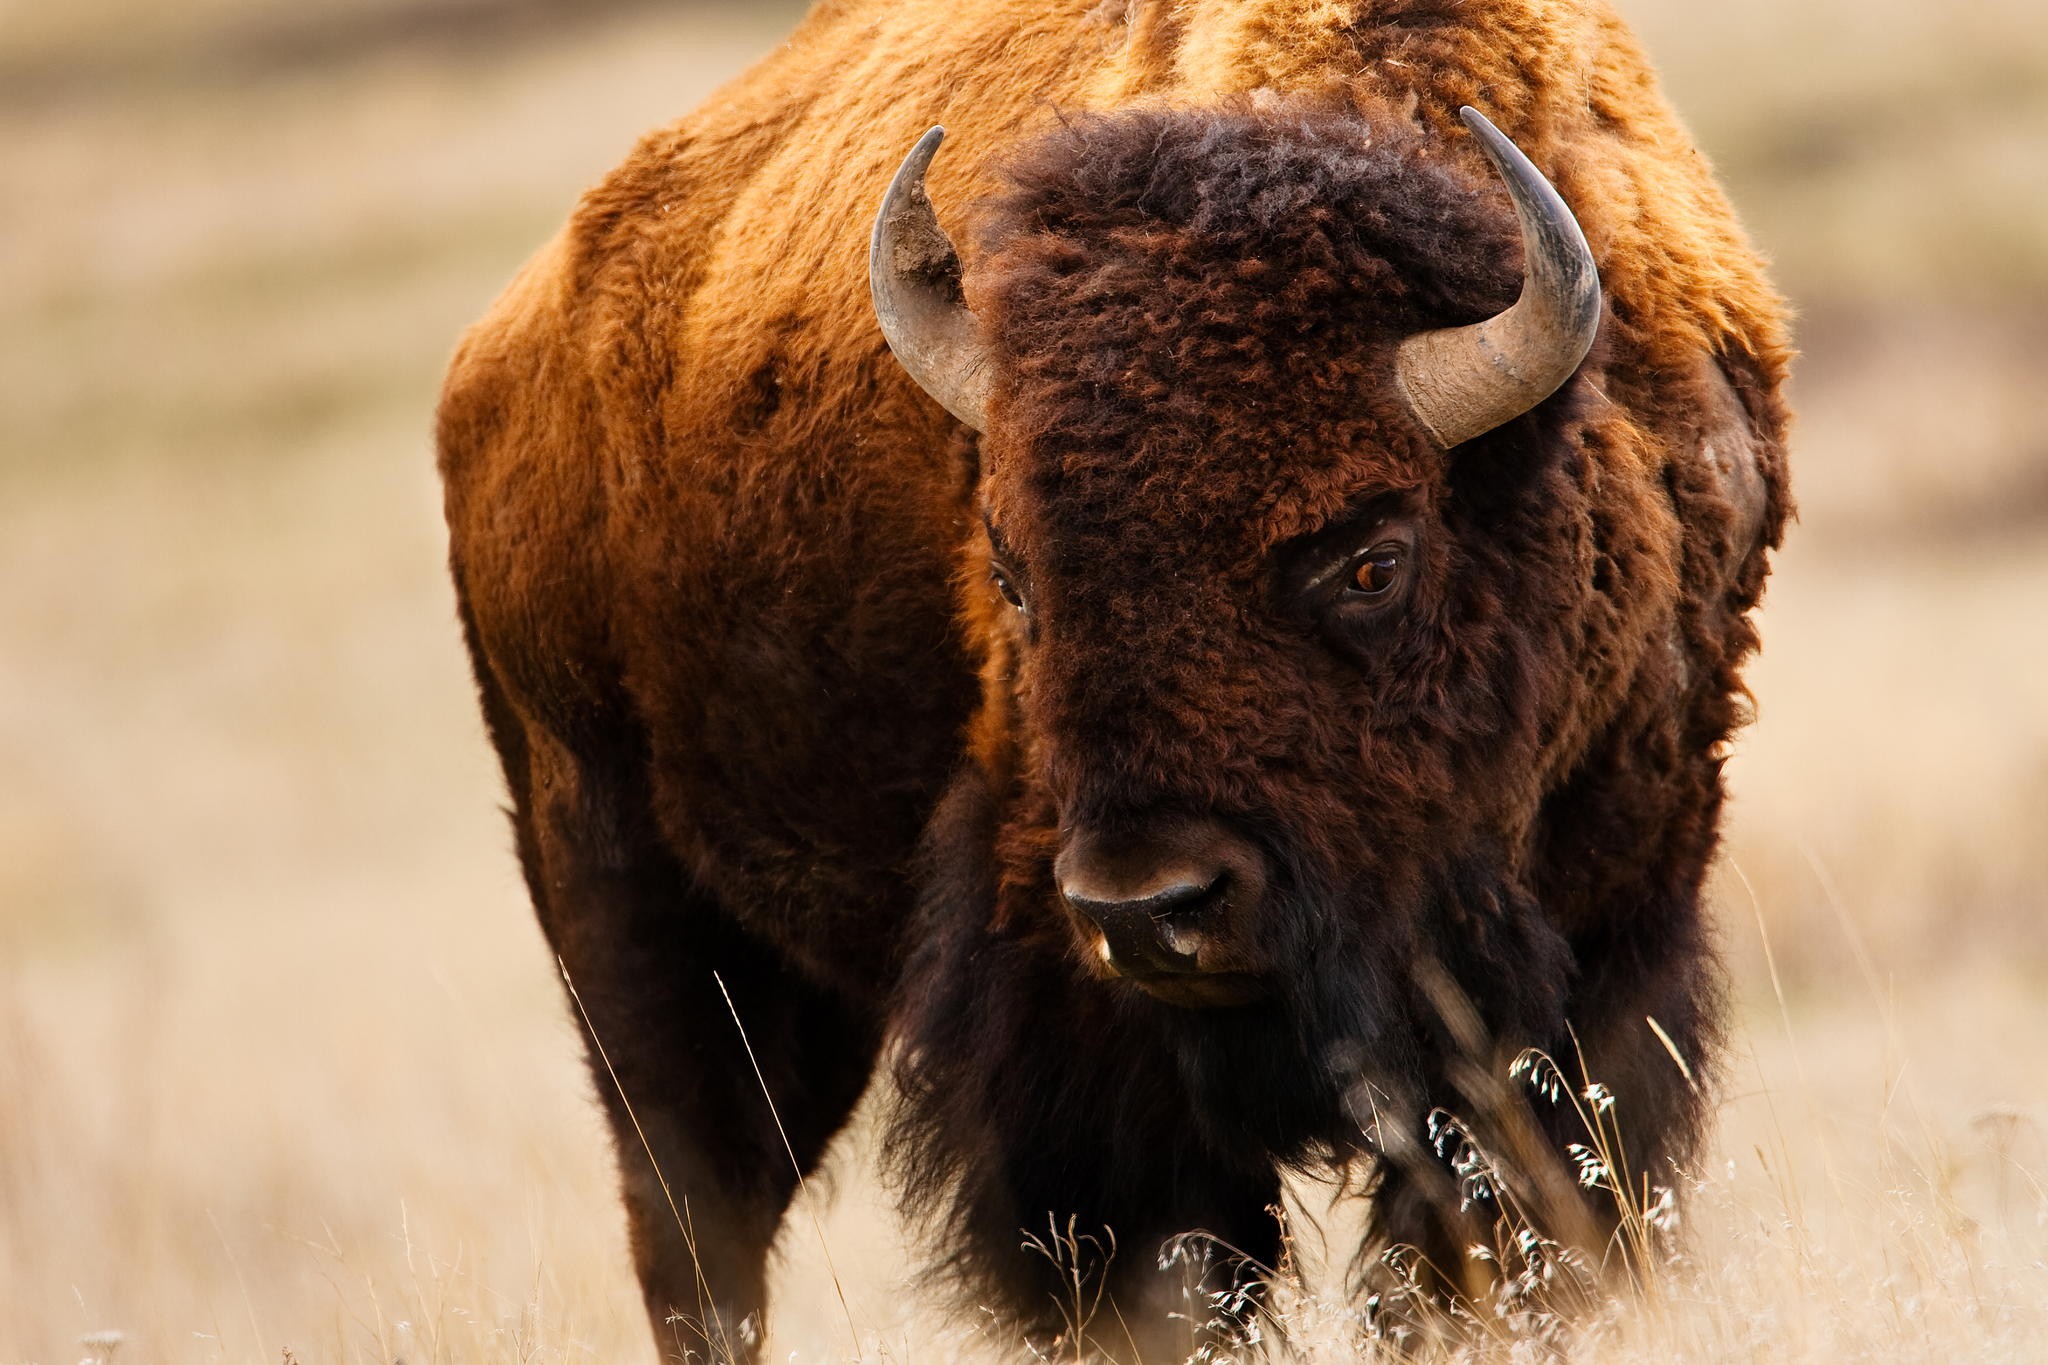 General 2048x1365 bison wildlife animals horns brown mammals